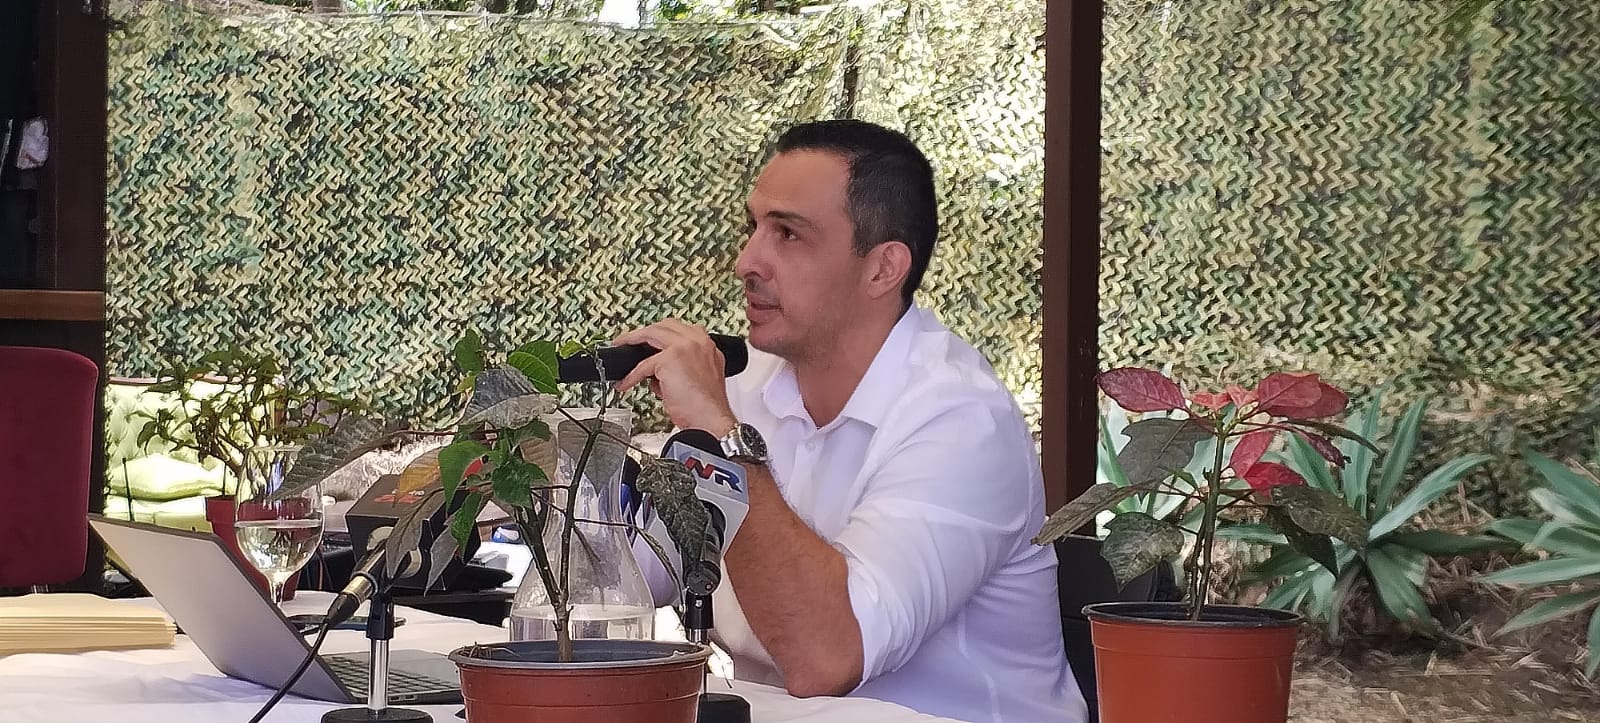 Exjerarca de Incofer sobre ministro Luis Amador: “tiene un criterio político muy respetado en Zapote”